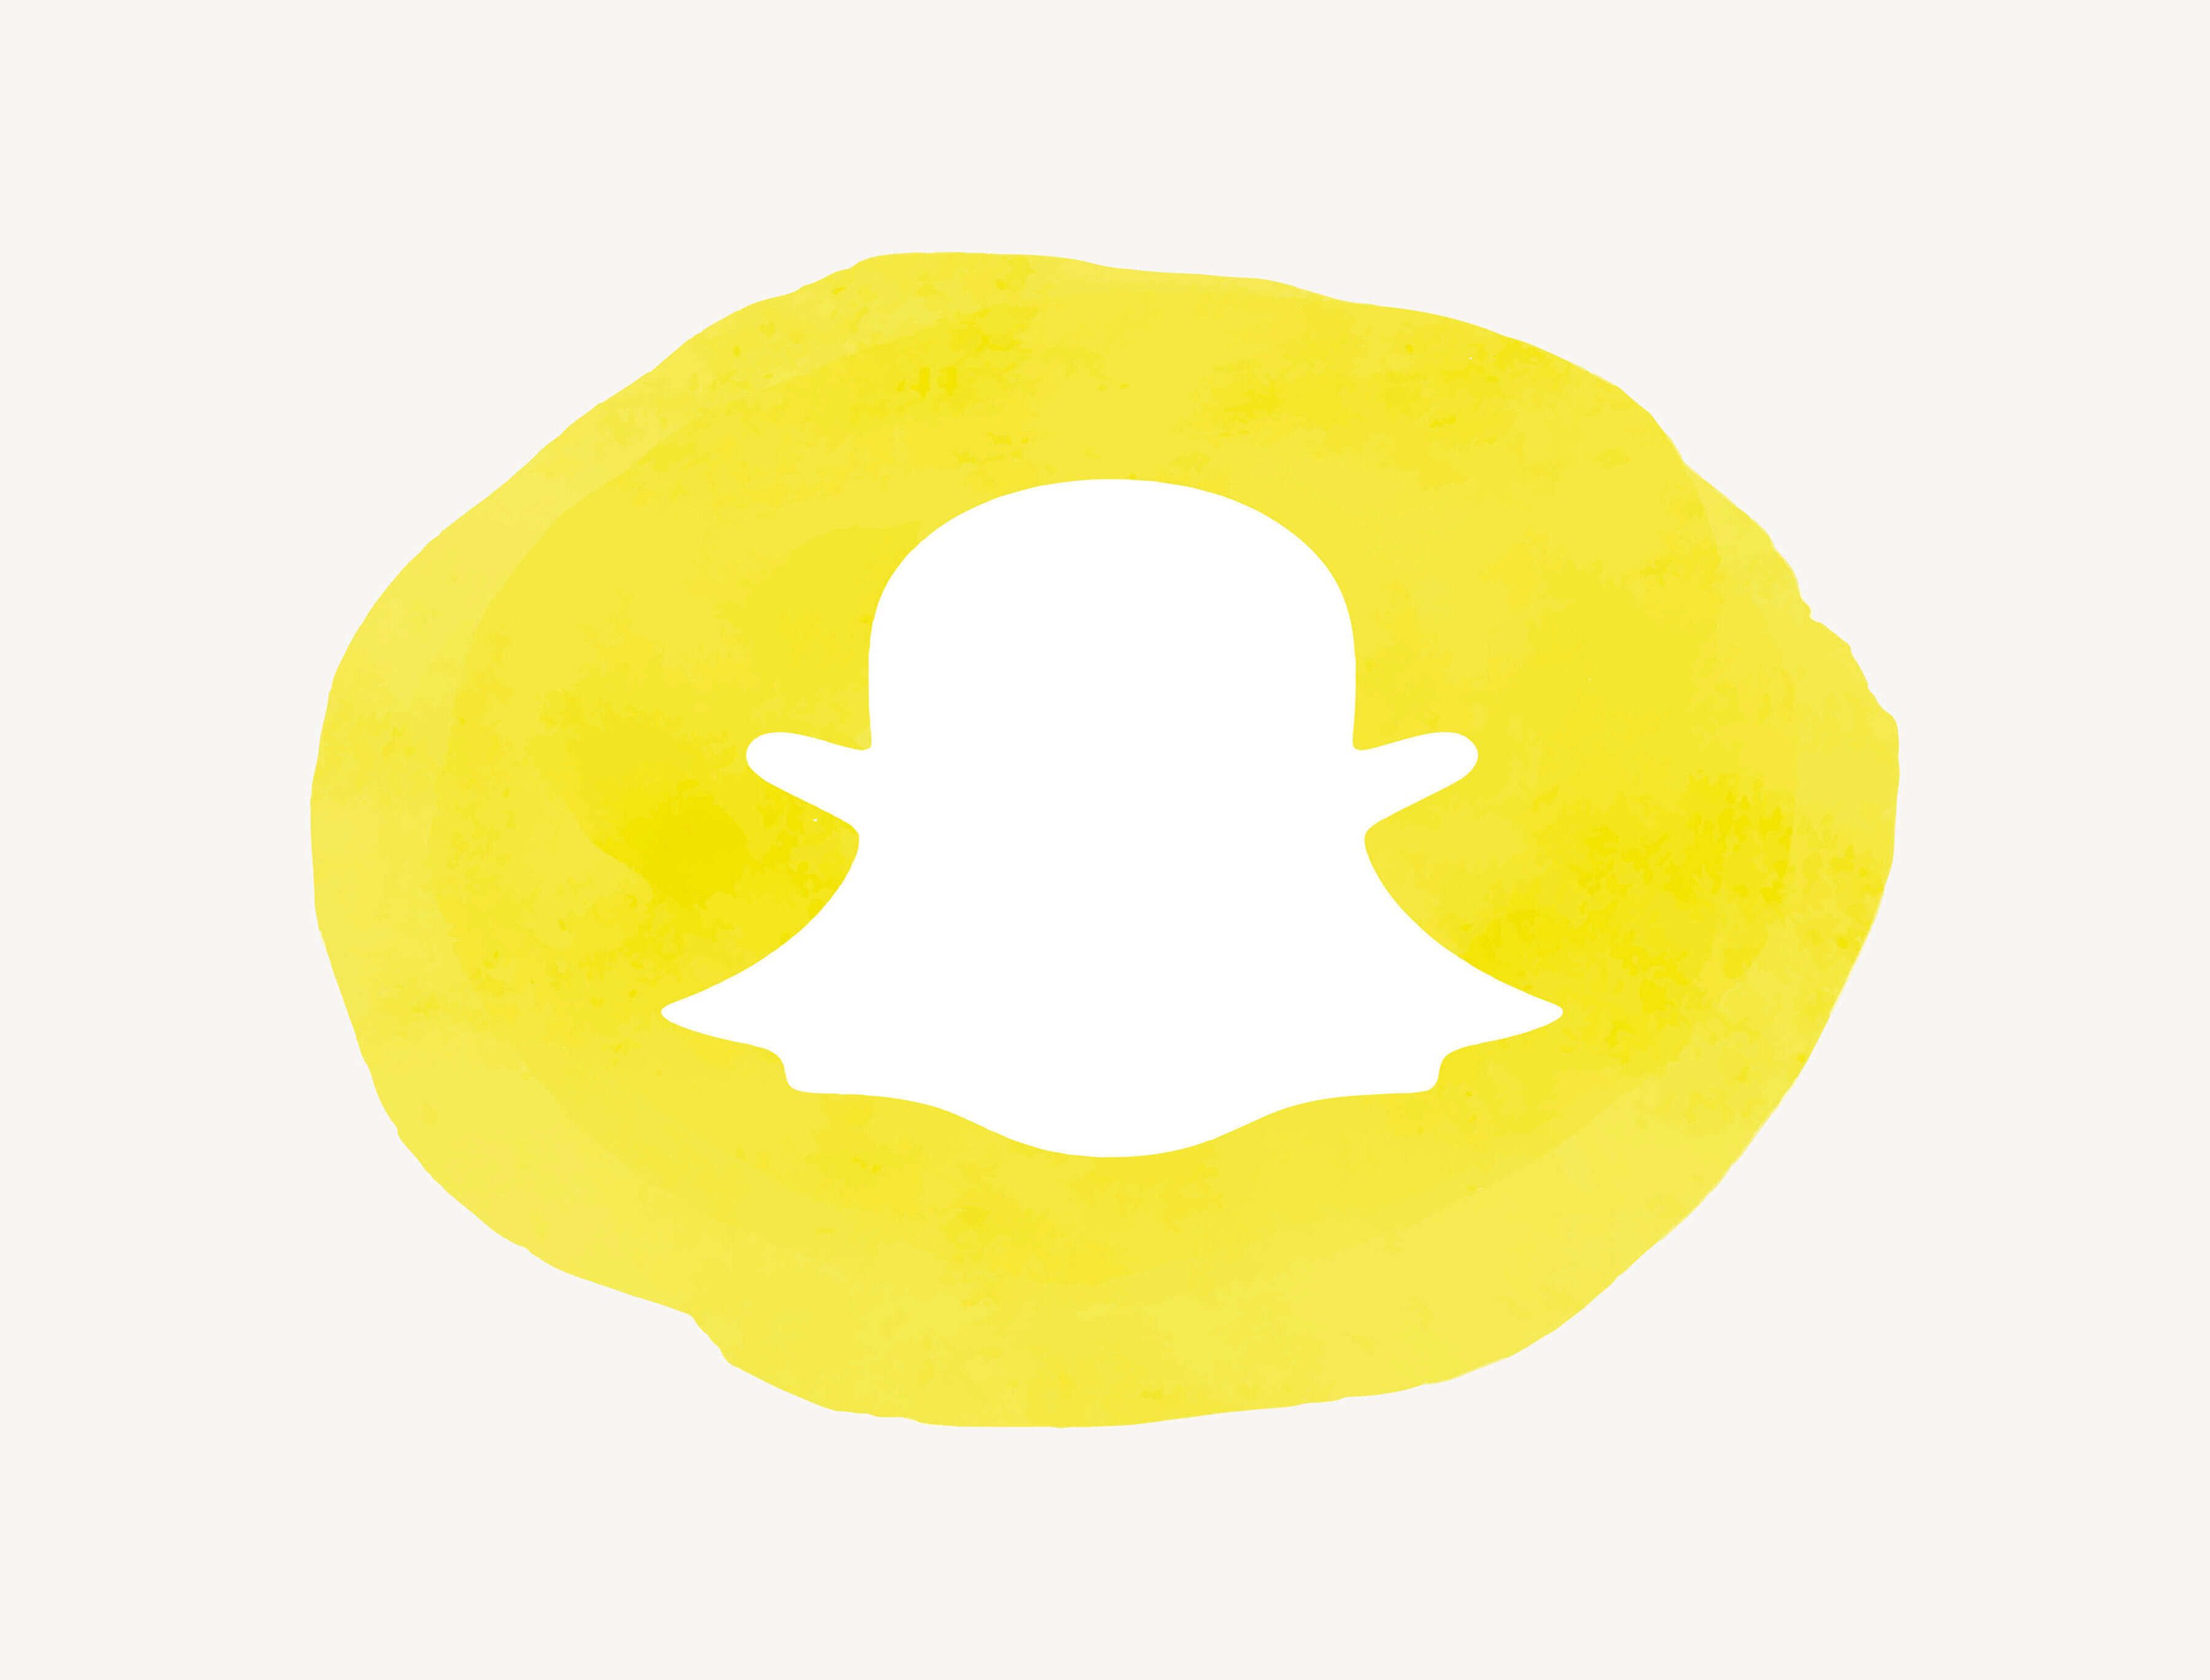  誰かのSnapchatの会話や行動をスパイするトップ7 Snapchatトラッカー